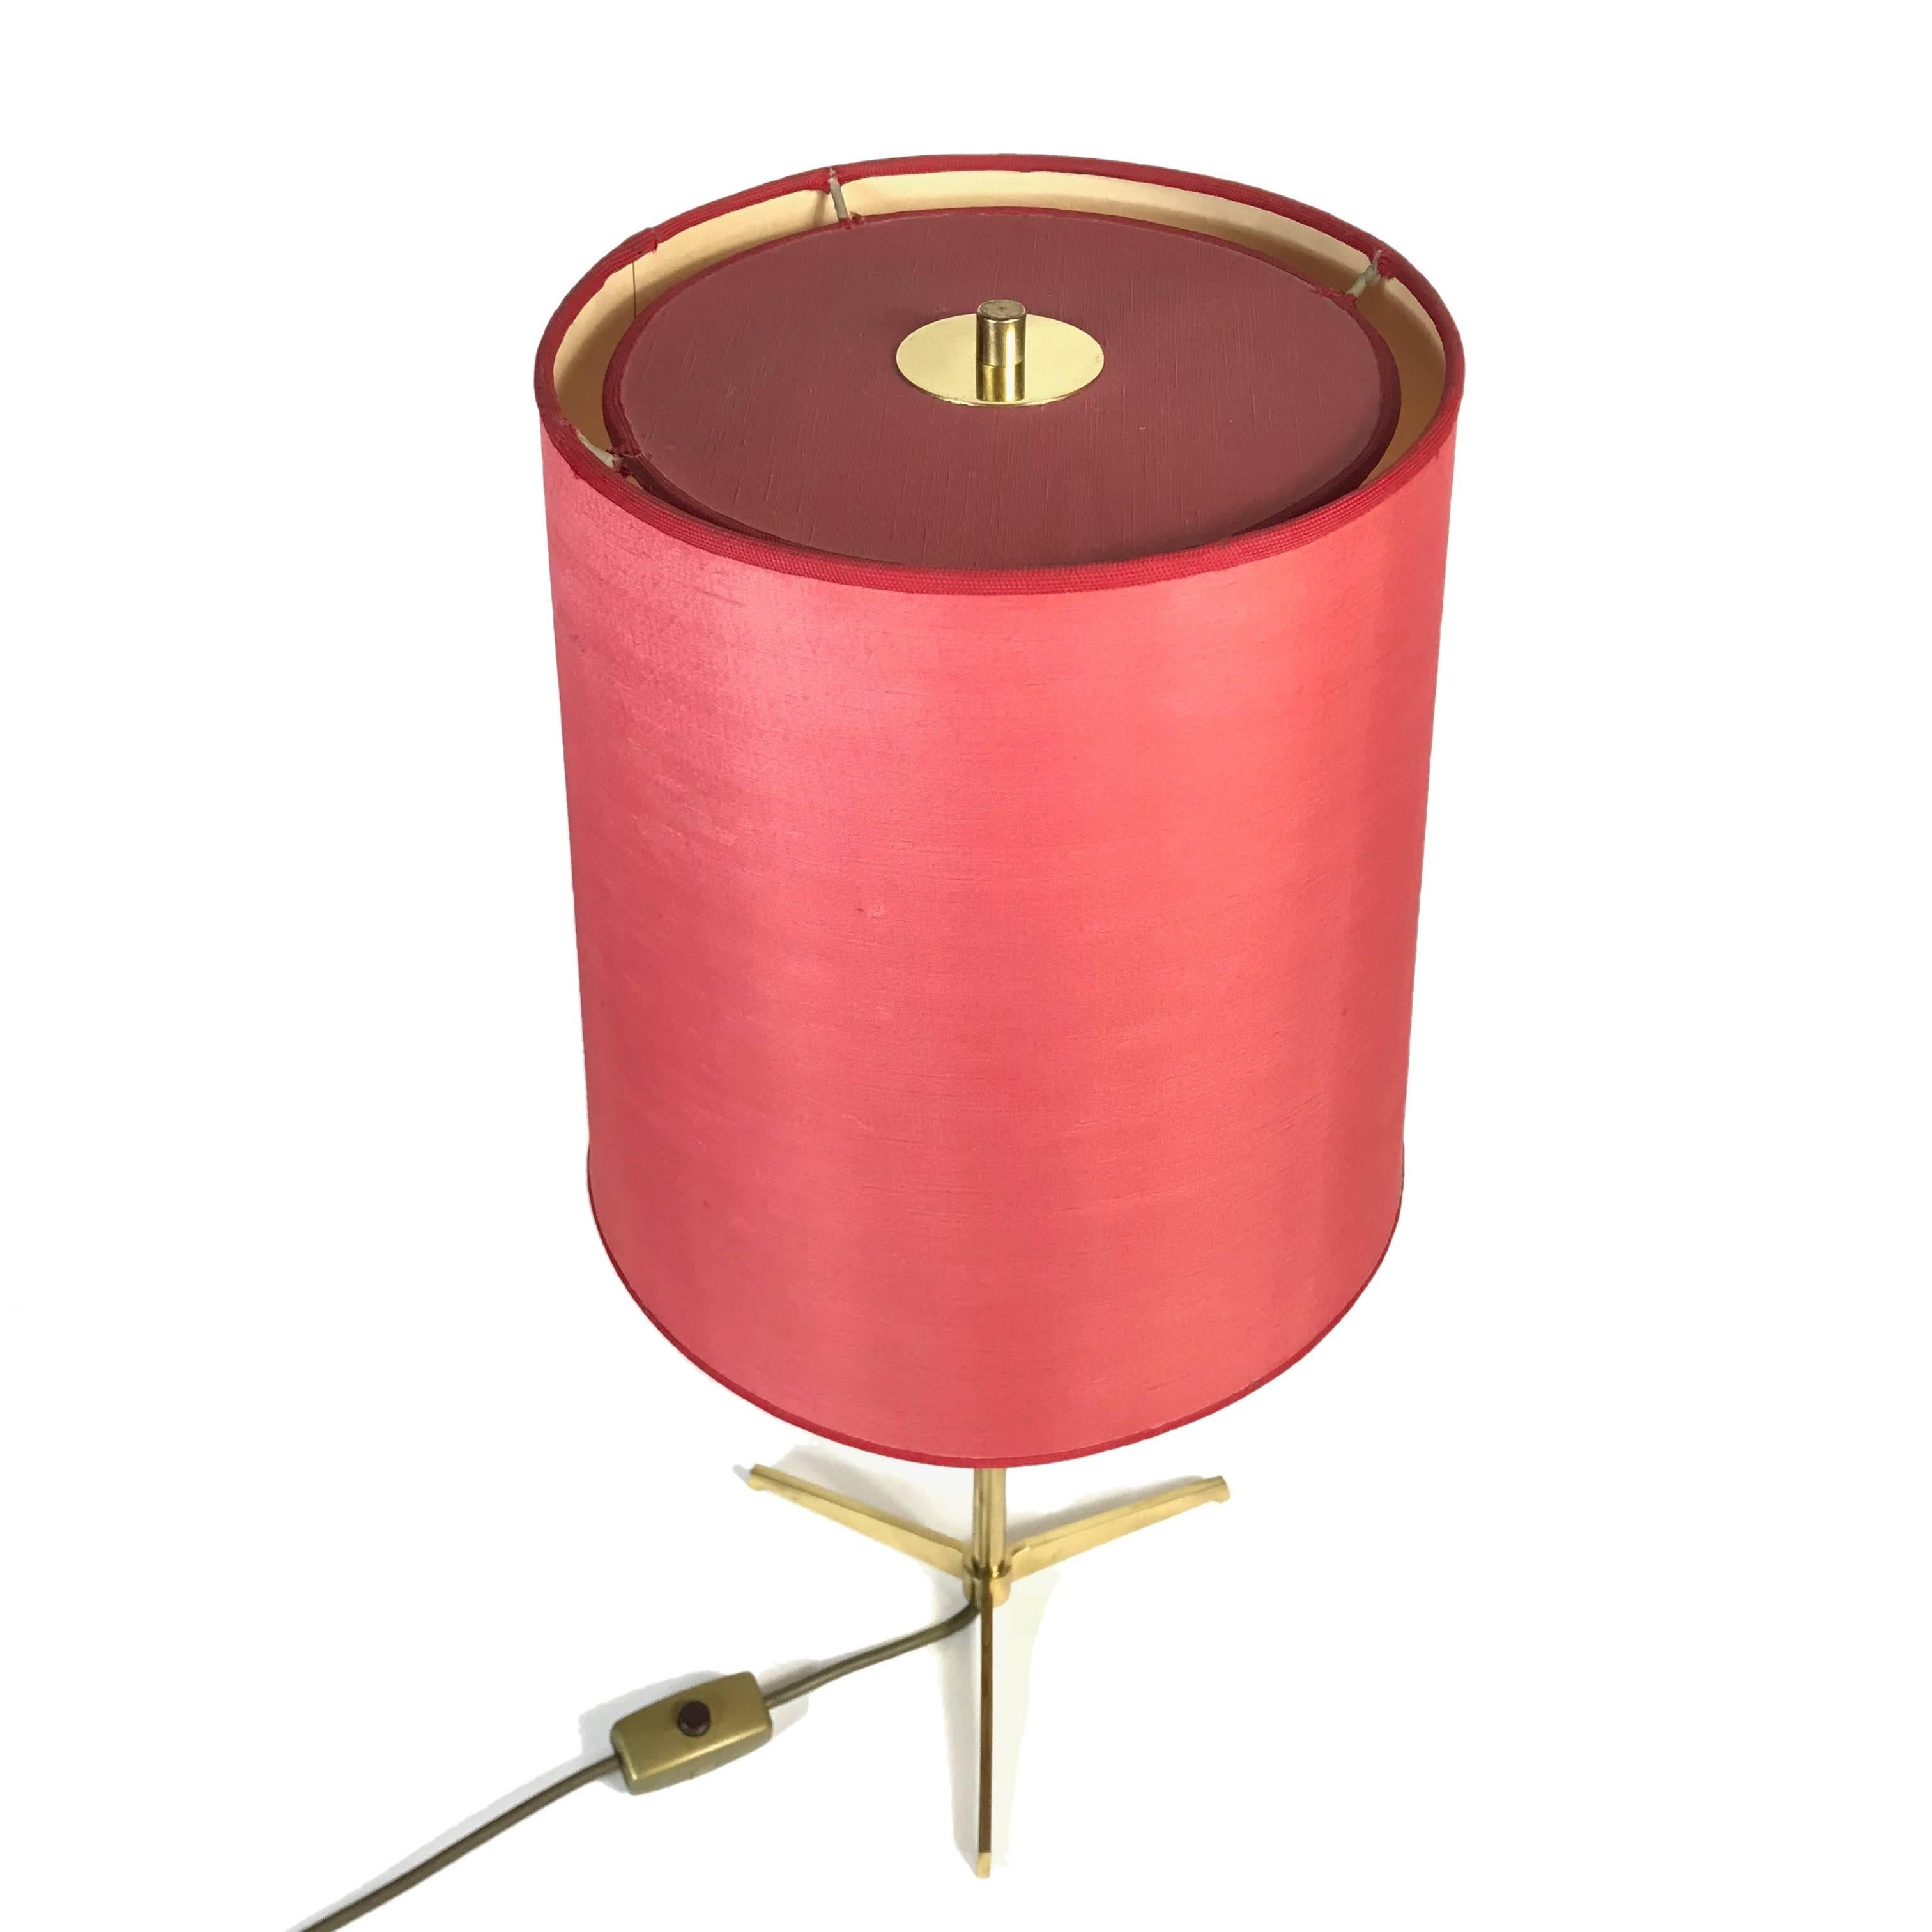 Midcentury J.T. Kalmar Brass Tripod Table Lamp, Red Shade, 1950s, Austria (Moderne der Mitte des Jahrhunderts)